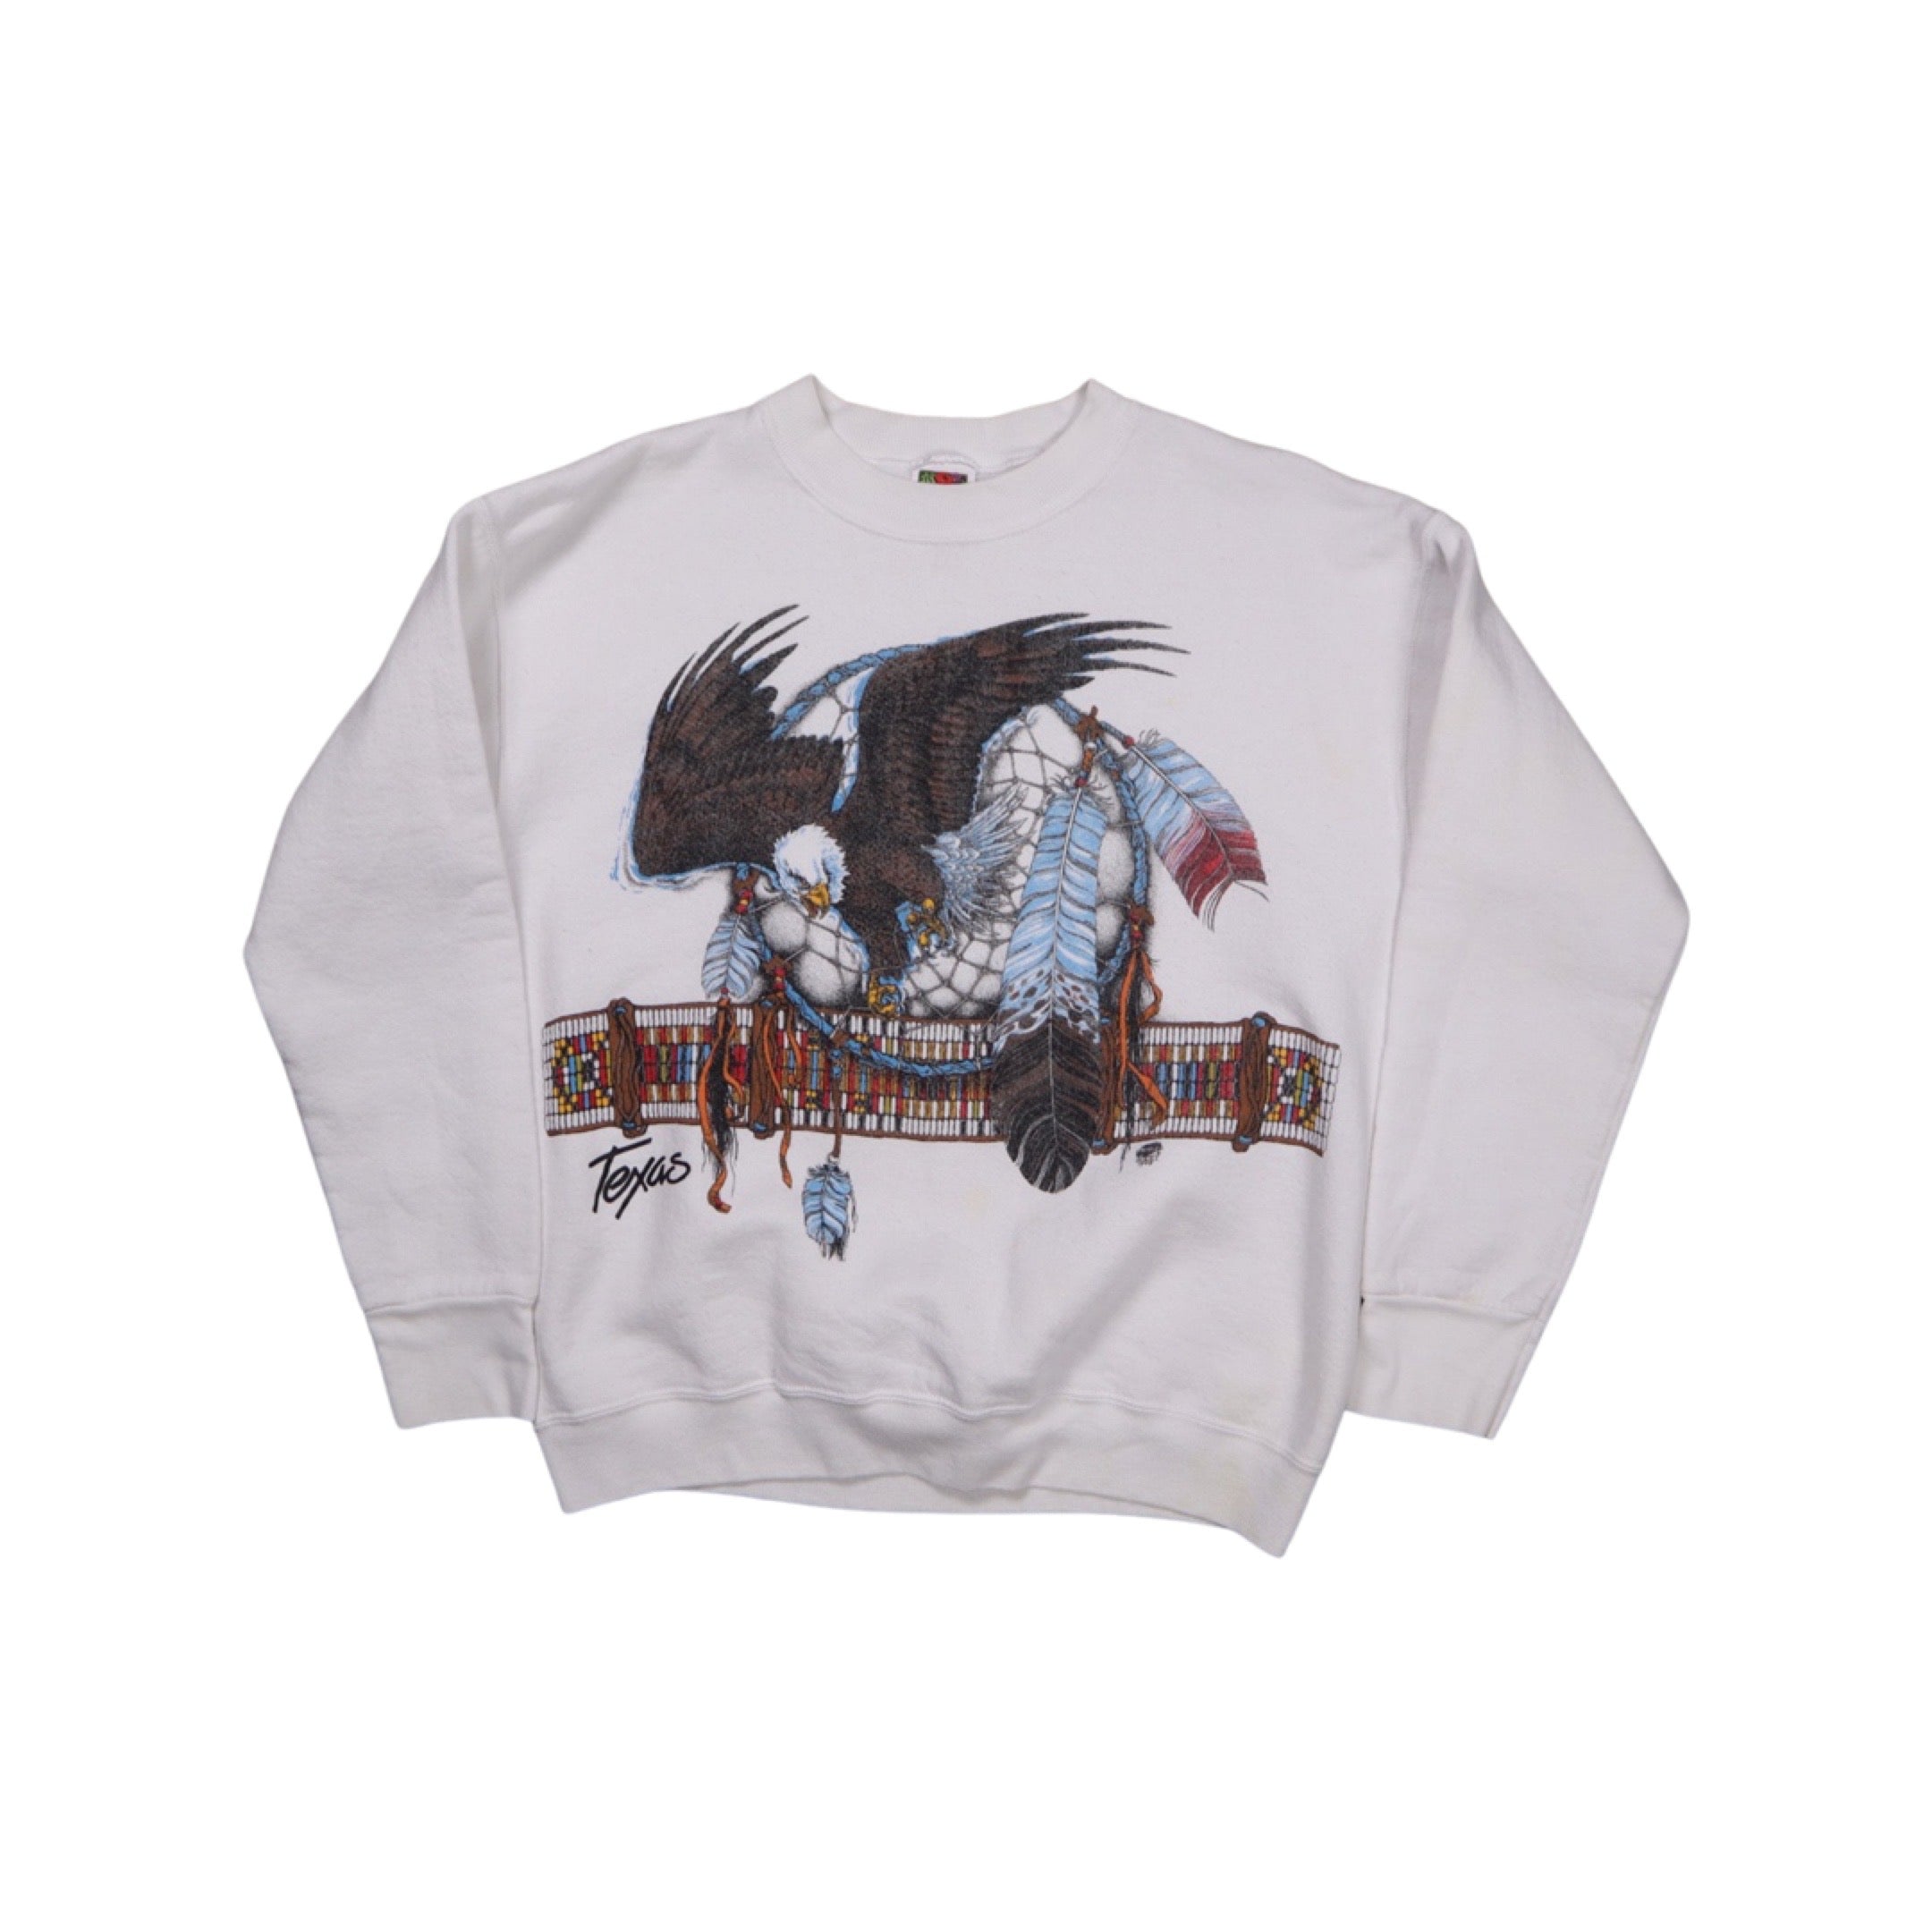 Texas Eagle 1995 Sweater (Small)